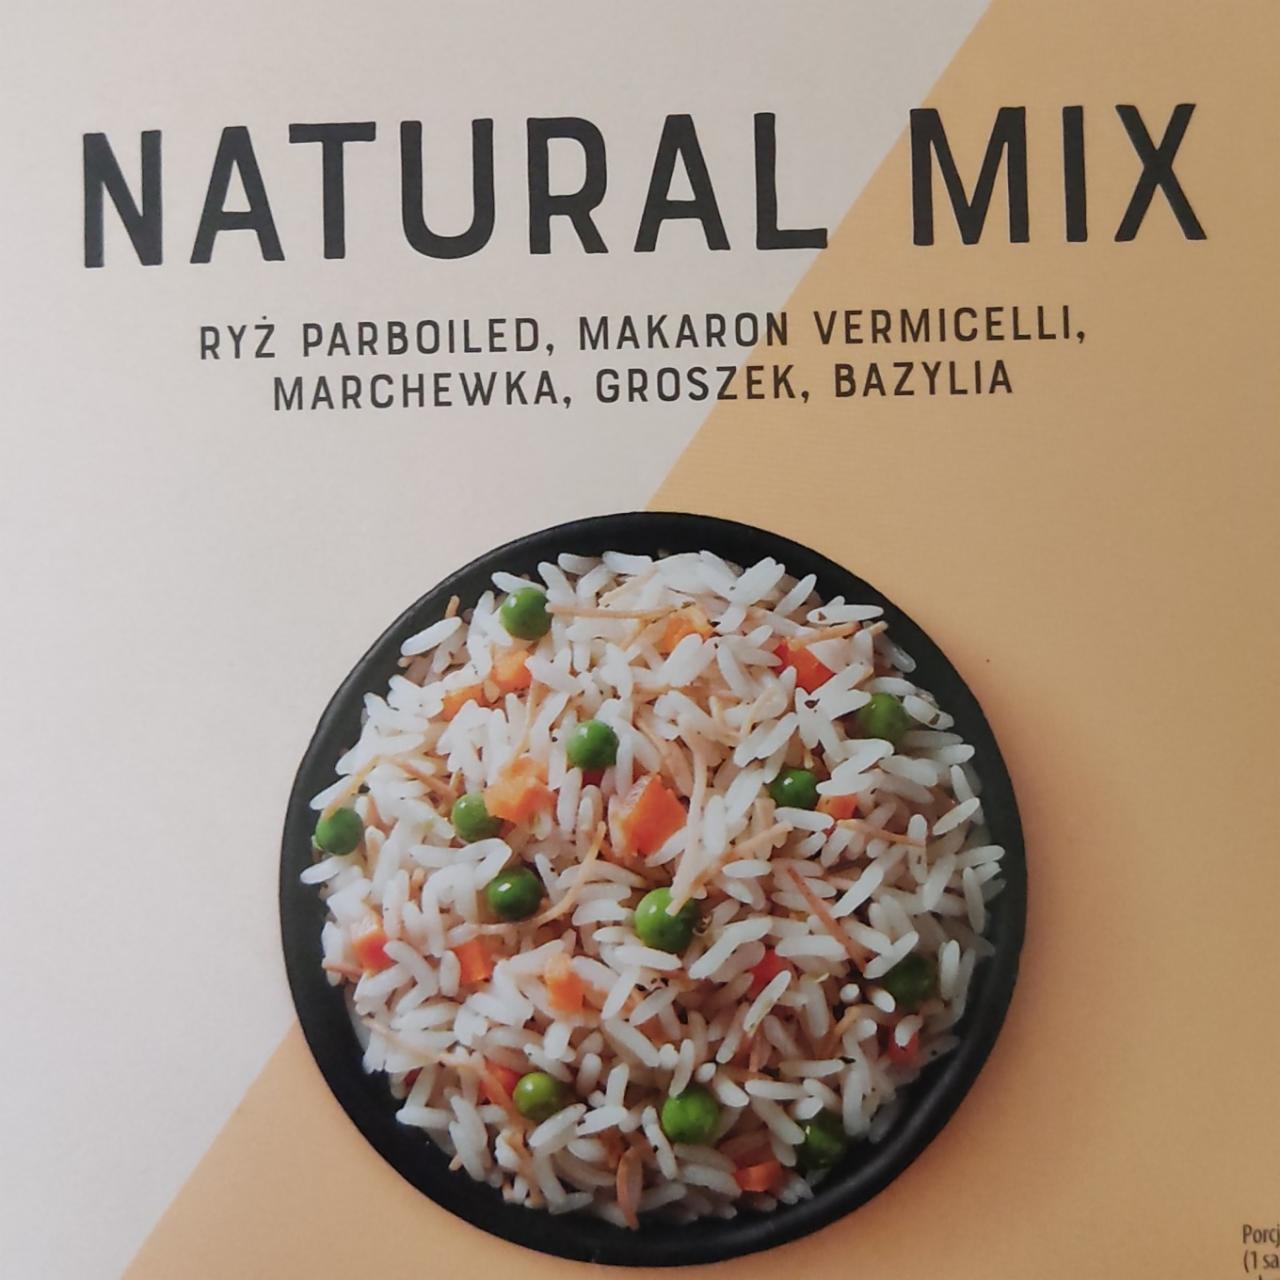 Zdjęcia - Natural Mix ryż parboiled makaron vermicelli marchewka groszek bazylia Plony natury